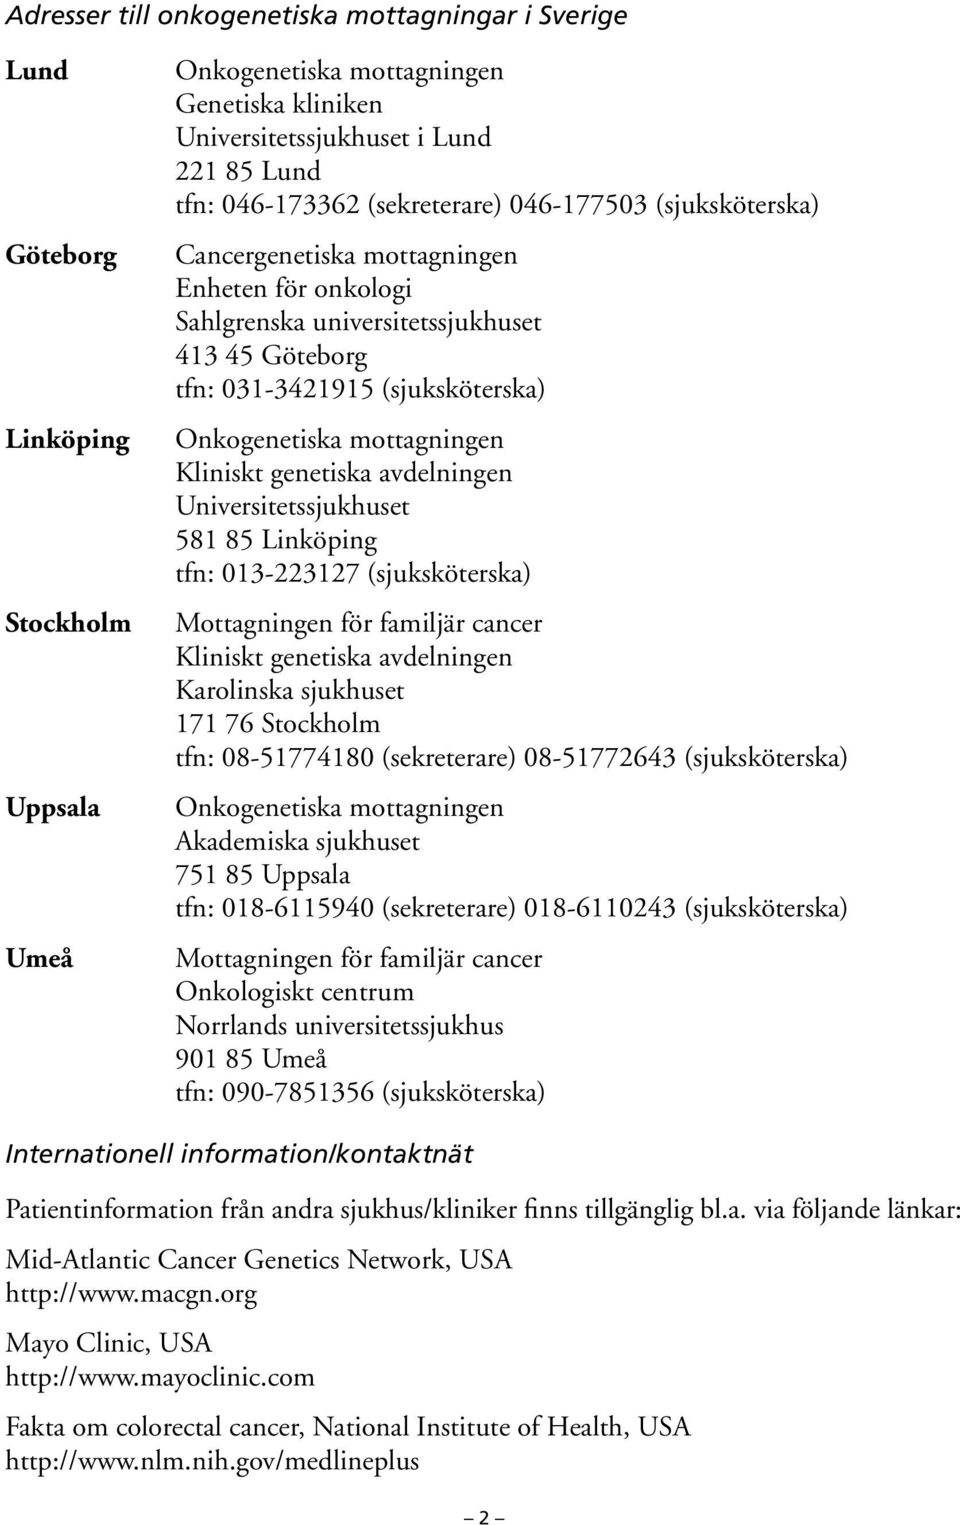 mottagningen Kliniskt genetiska avdelningen Universitetssjukhuset 581 85 Linköping tfn: 013-223127 (sjuksköterska) Mottagningen för familjär cancer Kliniskt genetiska avdelningen Karolinska sjukhuset